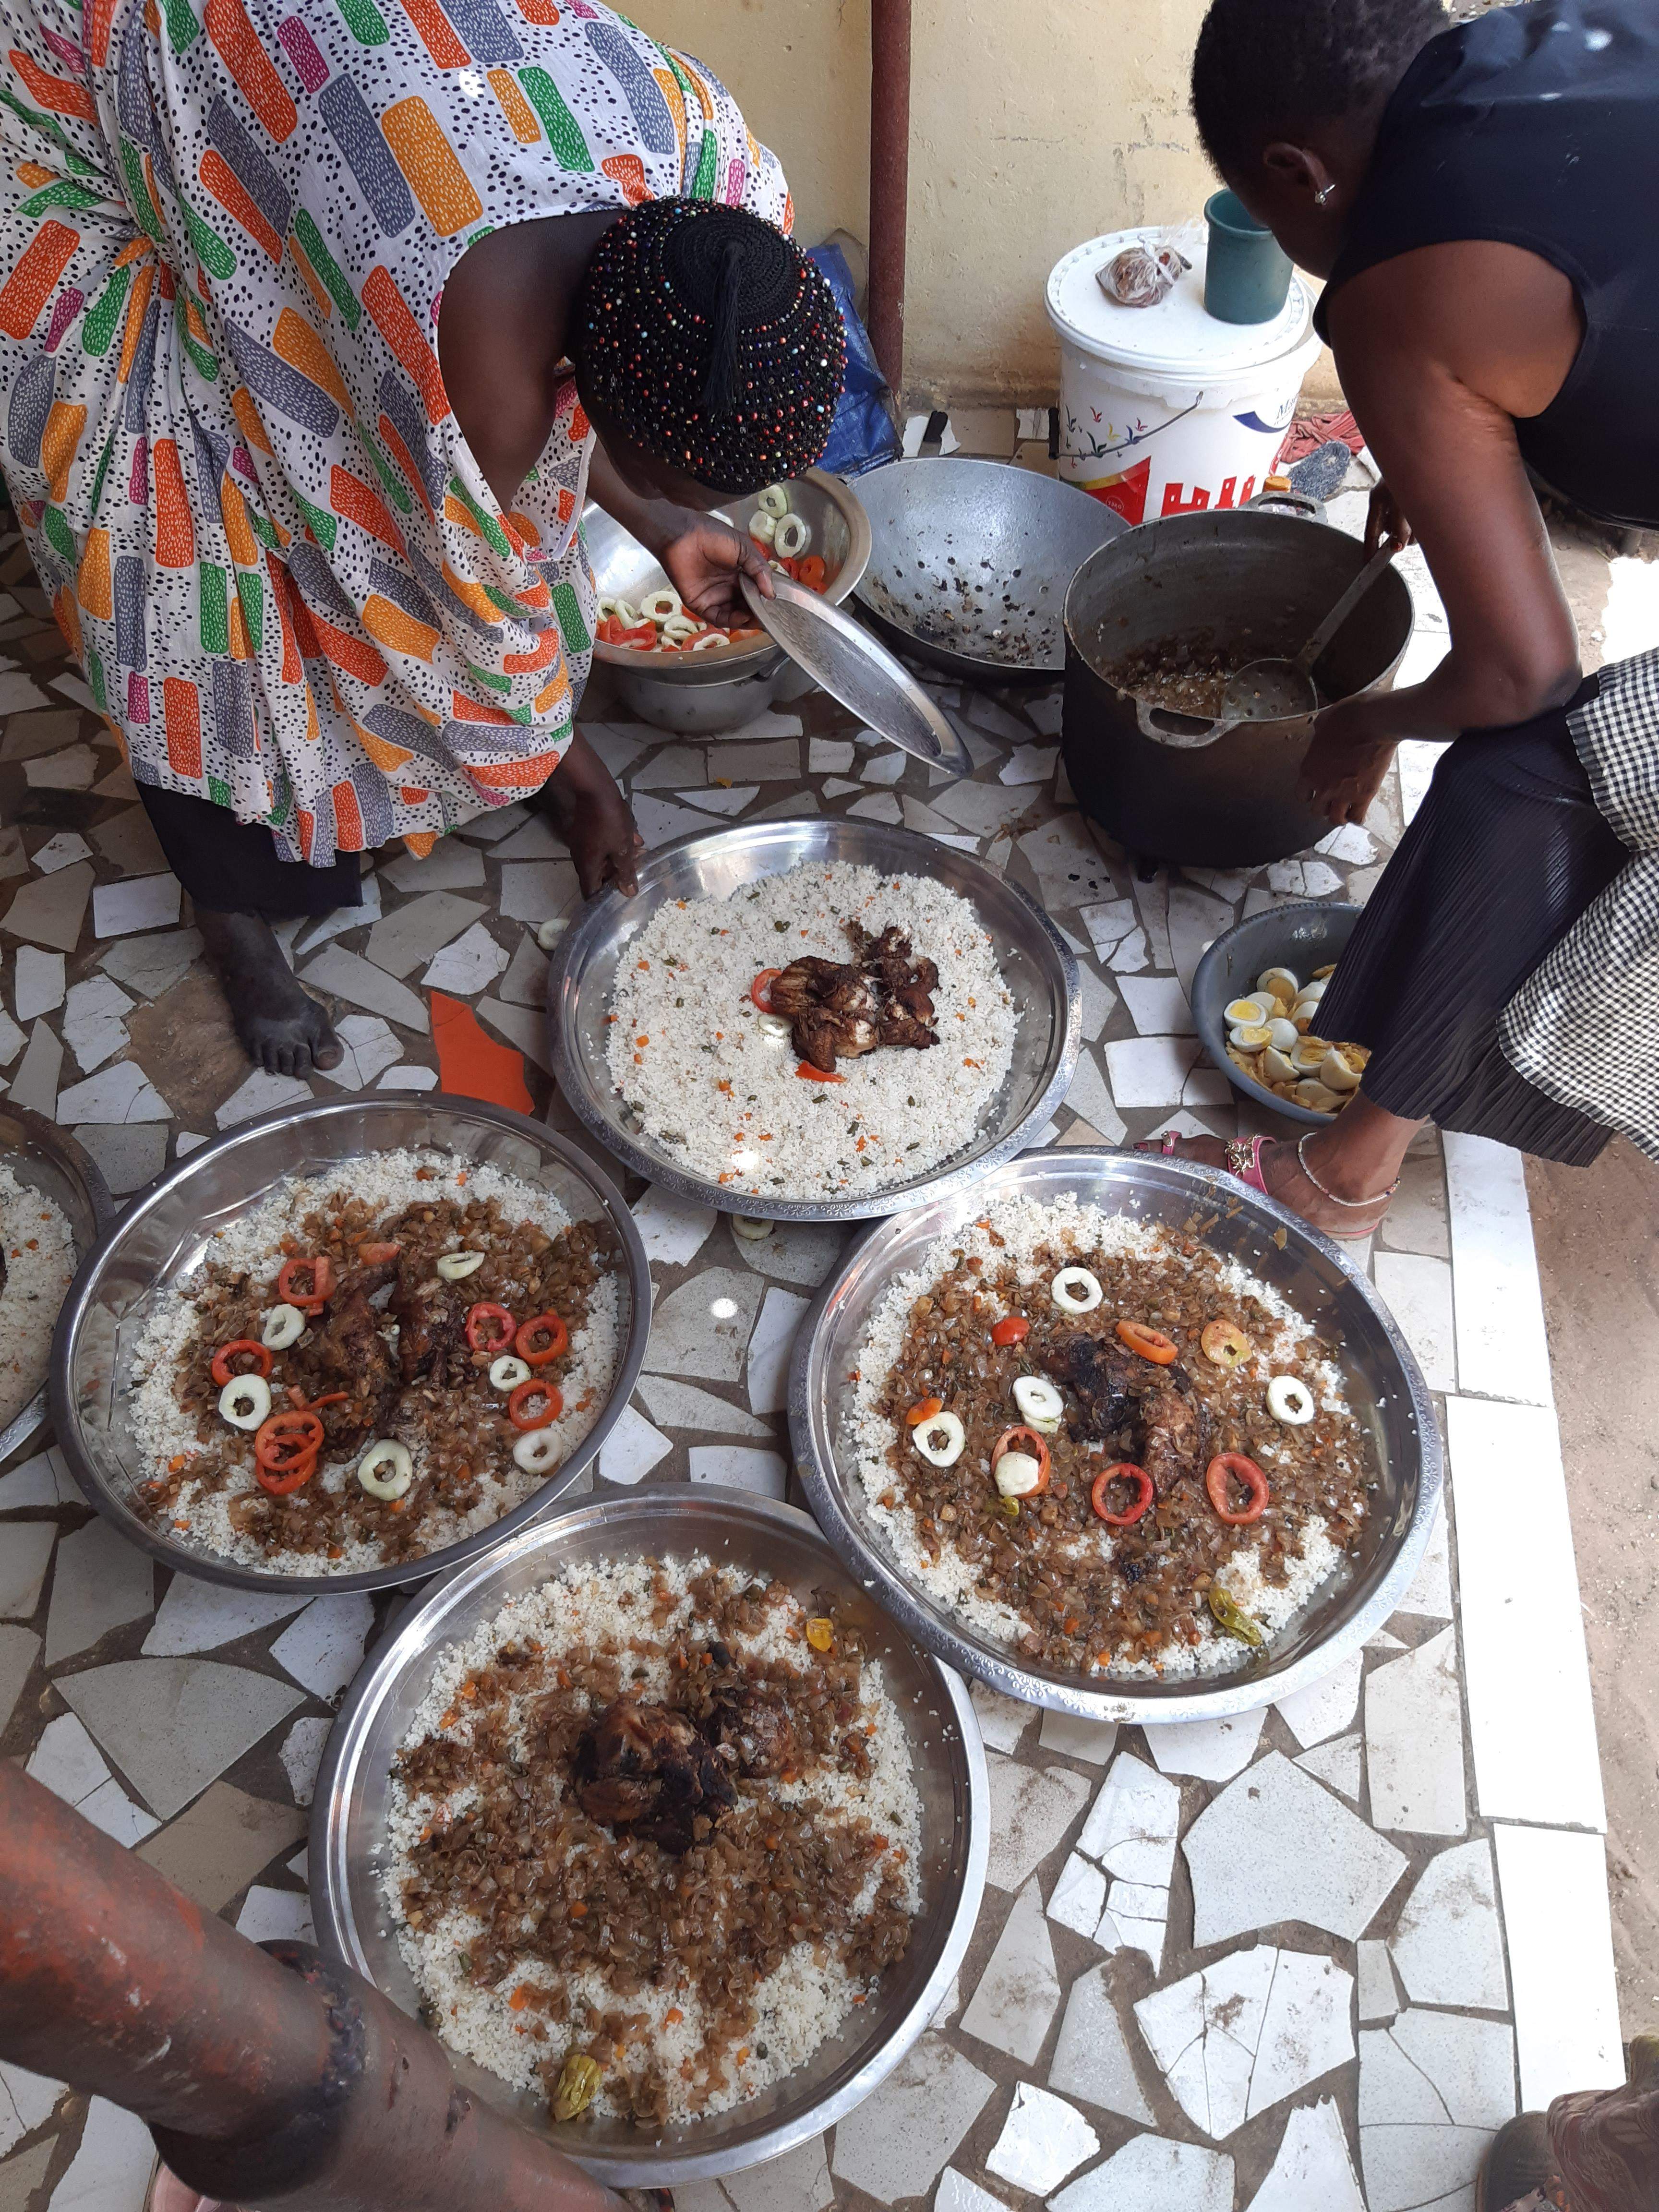 Während das Poulet in heissem Wasser vorgekocht wurde, kochte im anderen Kochtopf das Wasser für sechs Kilo Reis